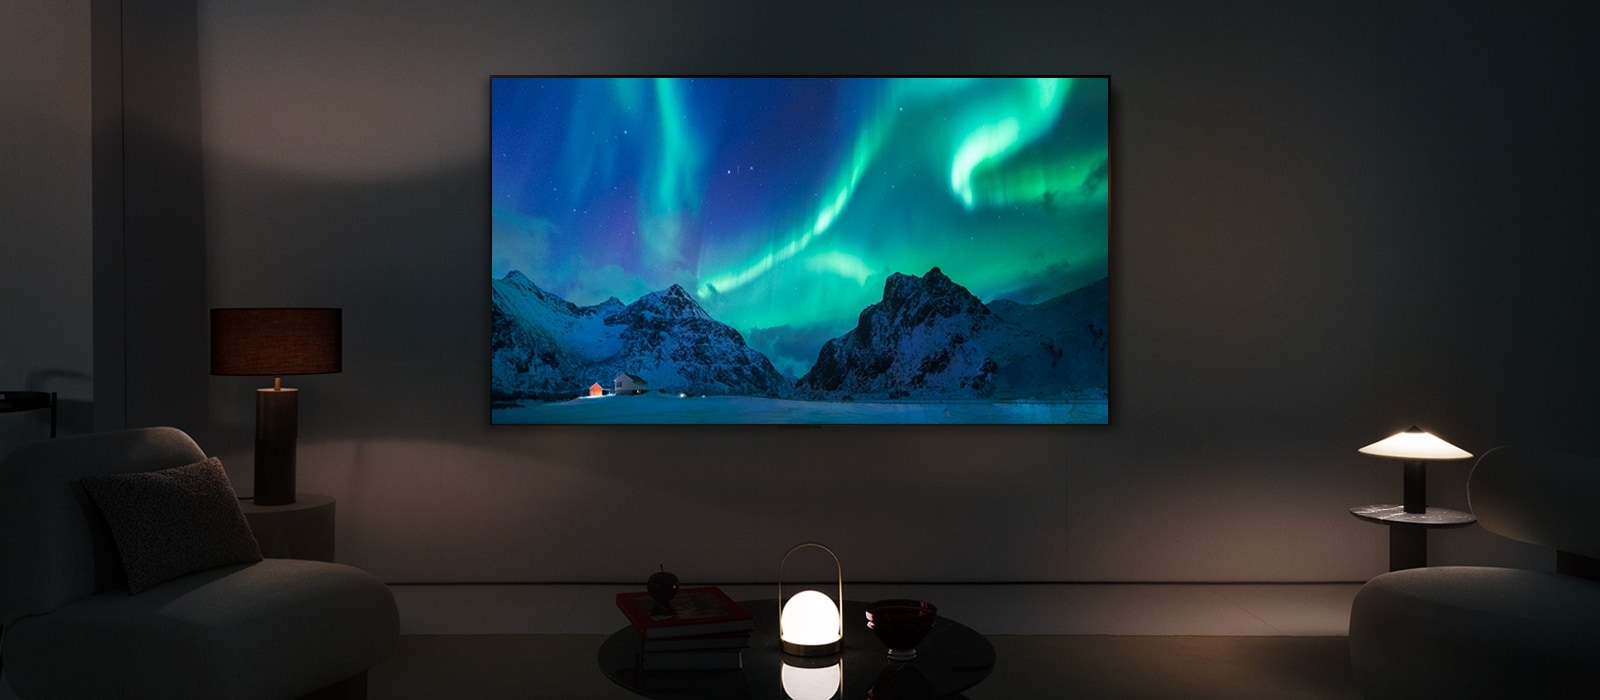 Televizorul LG OLED este ilustrat într-un spațiu de locuit modern în timpul nopții. Imaginea ecranului cu aurora boreală este afișată cu nivelurile ideale de luminozitate.